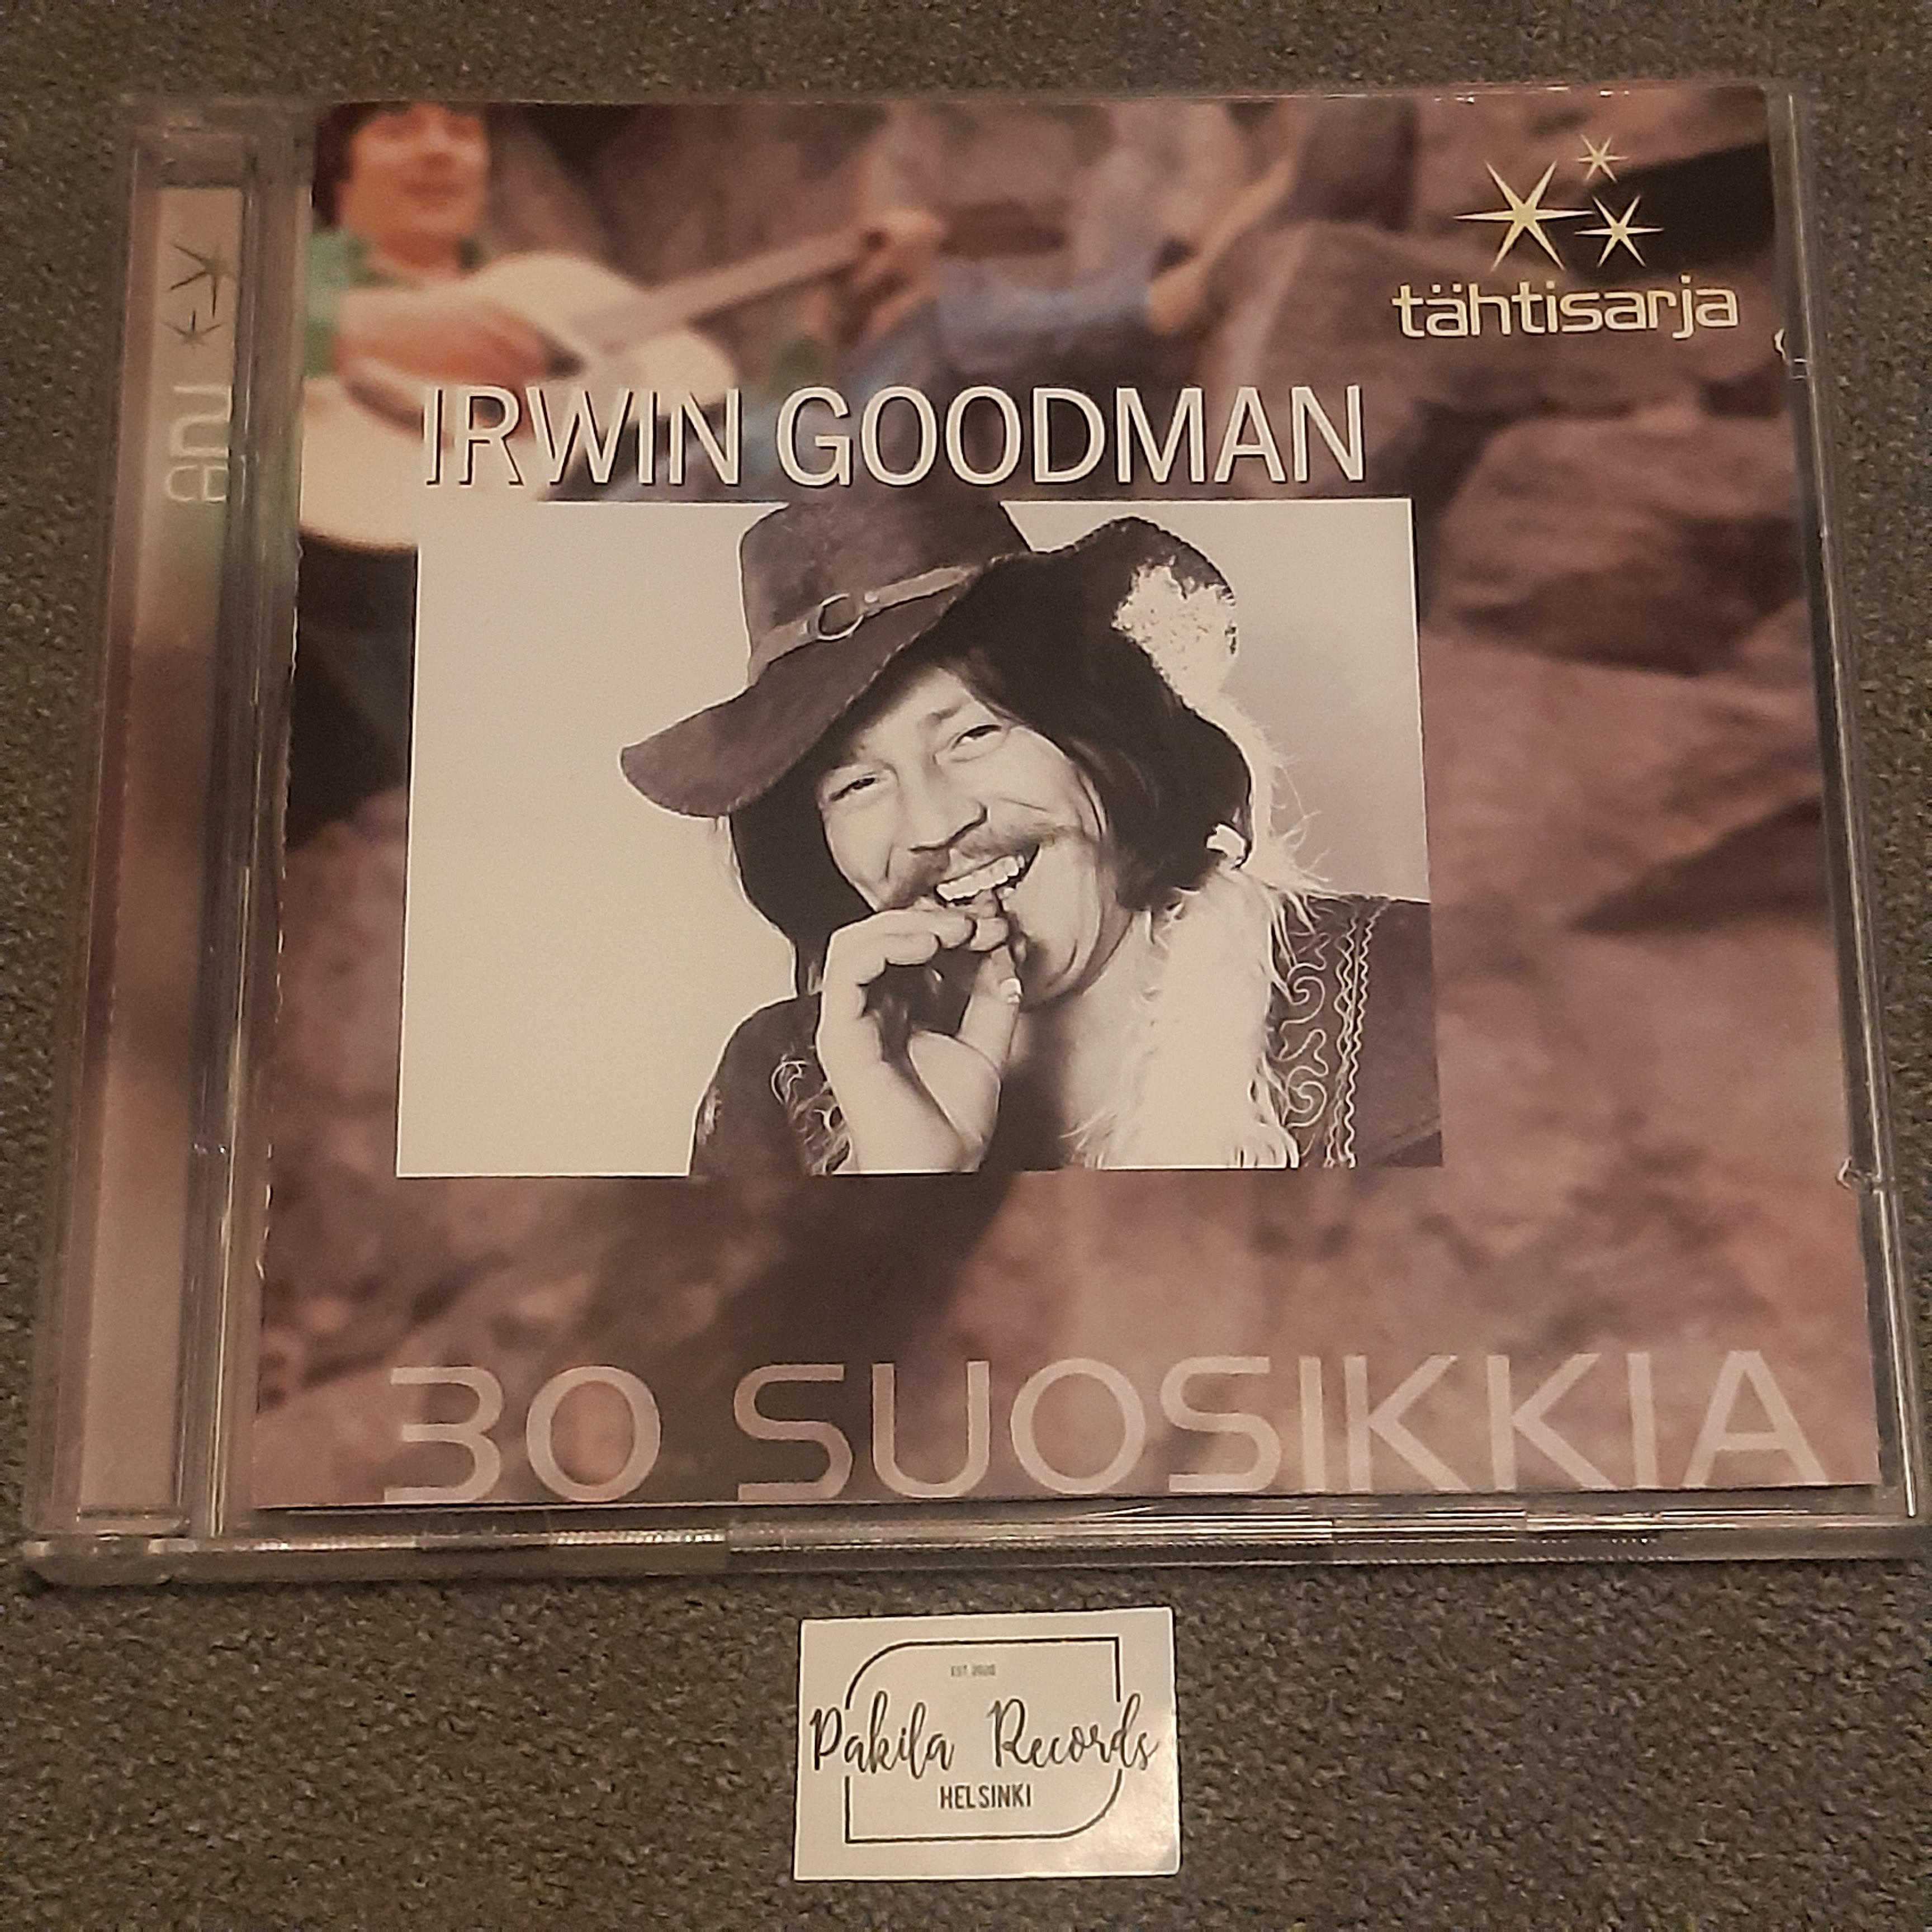 Irwin Goodman - 30 Suosikkia - 2 CD (käytetty)